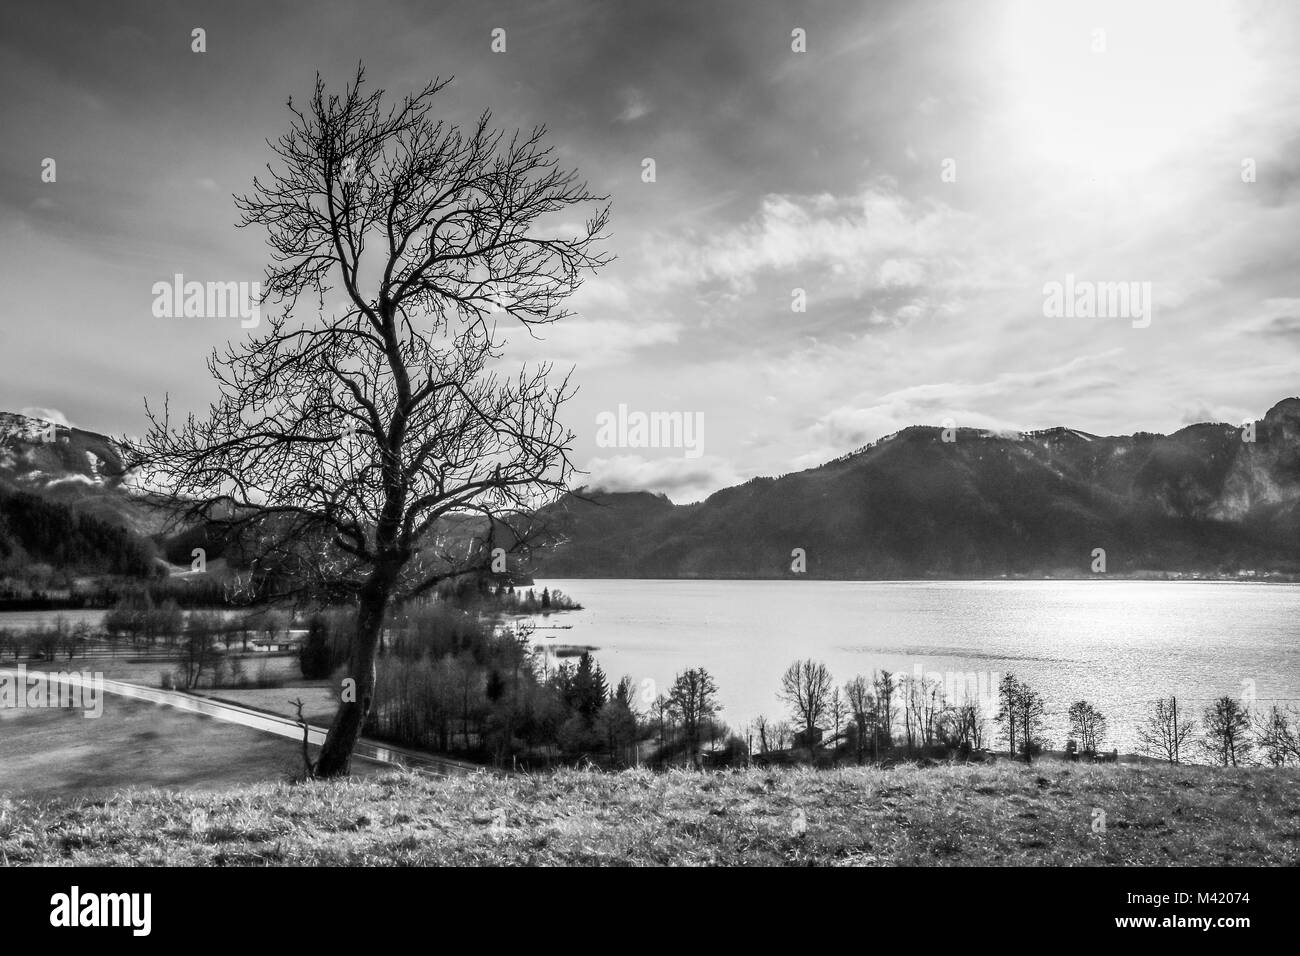 Une vue de la lac de Mondsee en Autriche. Le ciel est nuageux, l'atmosphère est sombre. Banque D'Images